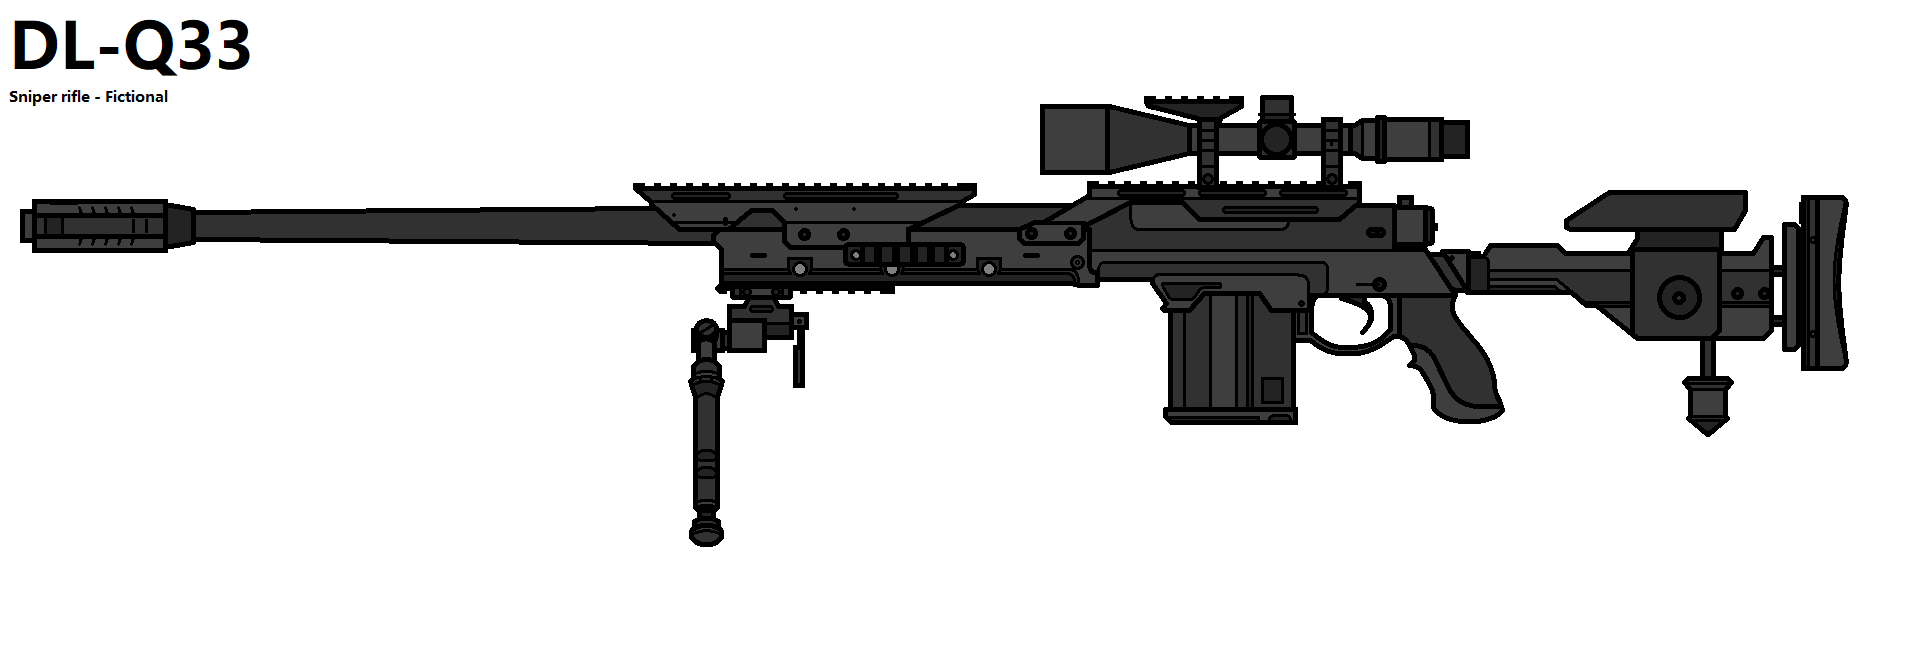 DL Q33 - Sweet Sniper (COD Mobile) by alfo23 on DeviantArt